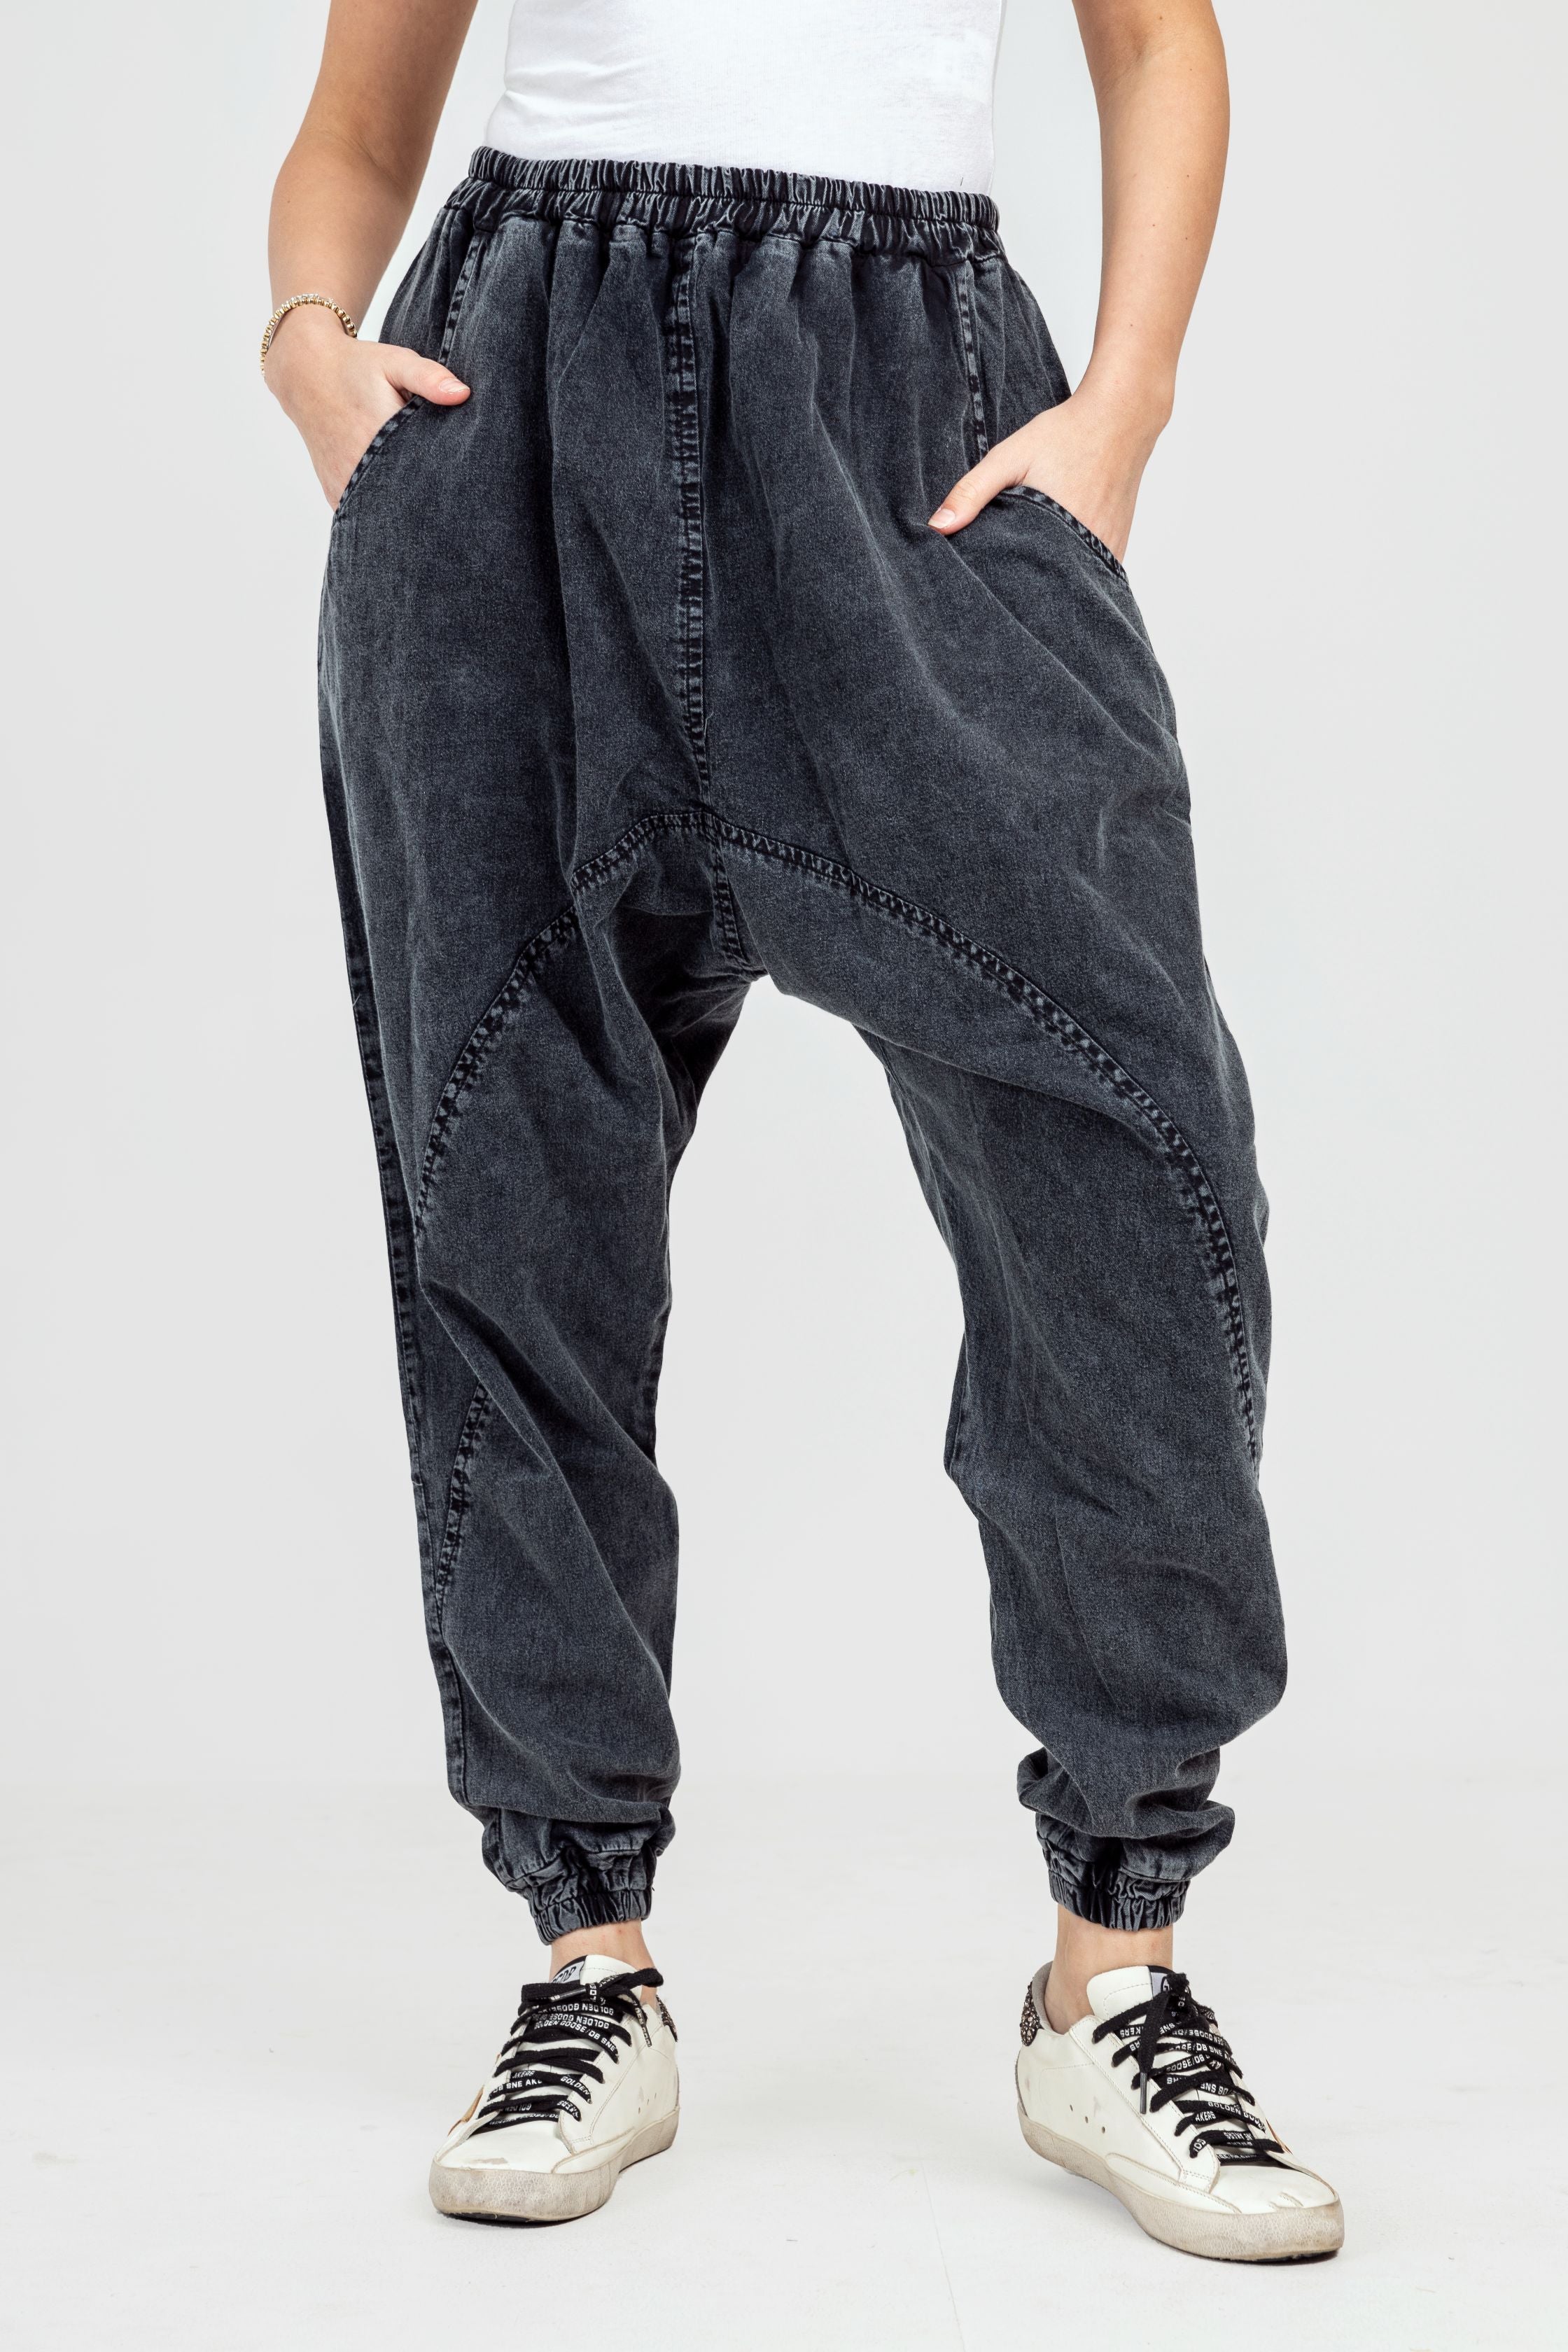 Shirred Waist Flowy Black Harem Pants | Wholesale Boho Clothing